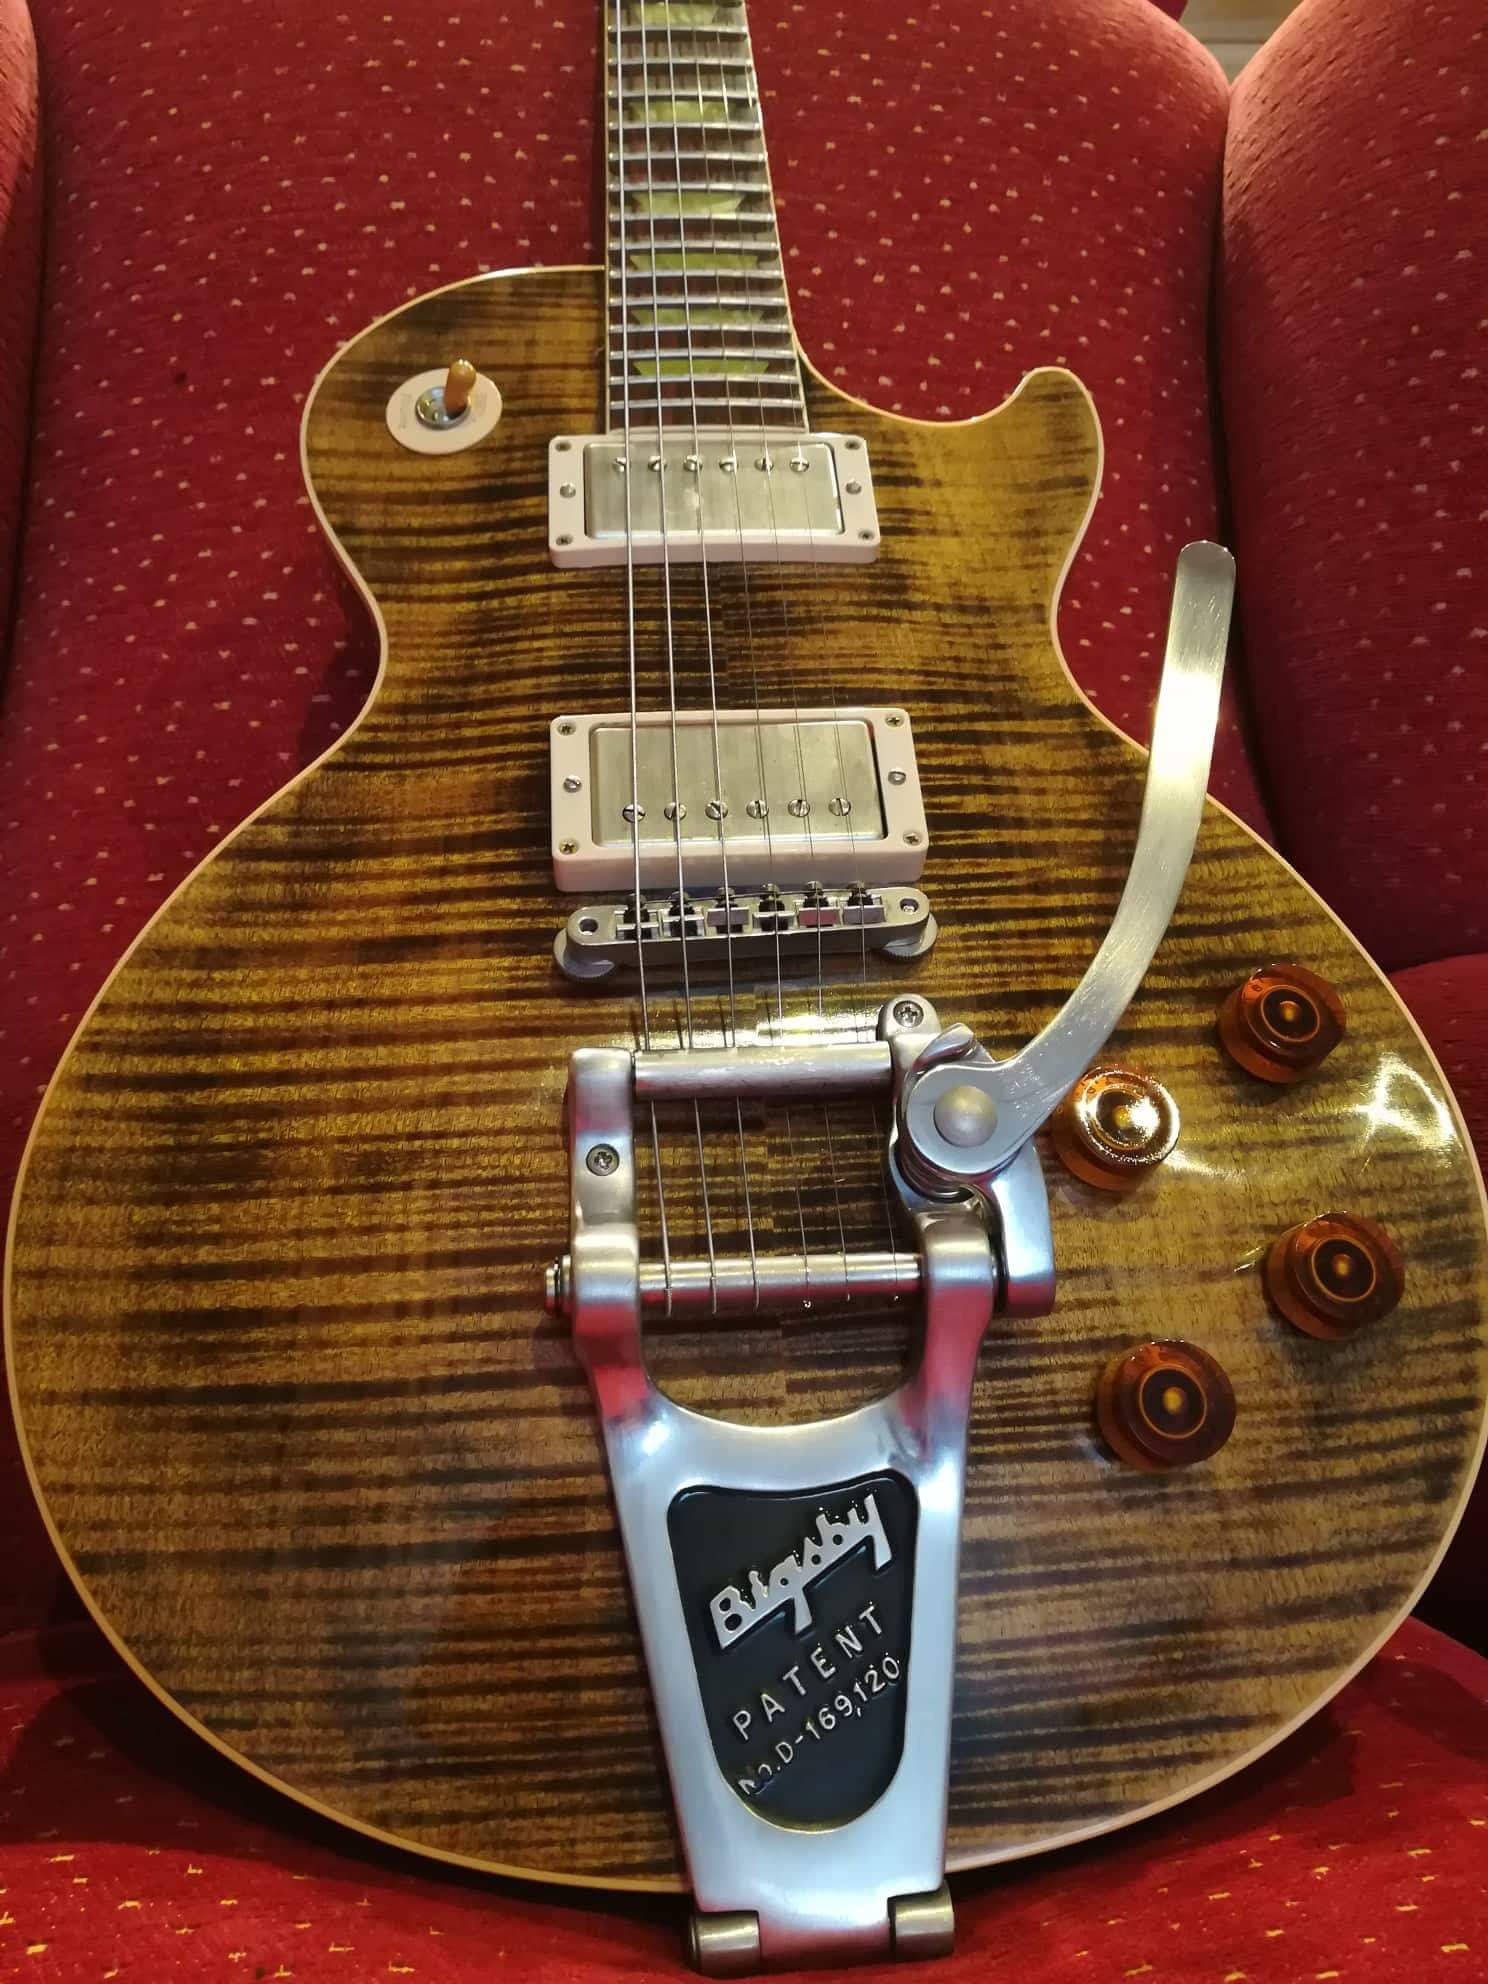     Gibson Les Paul Custom Shop Joe Perry boneyard    